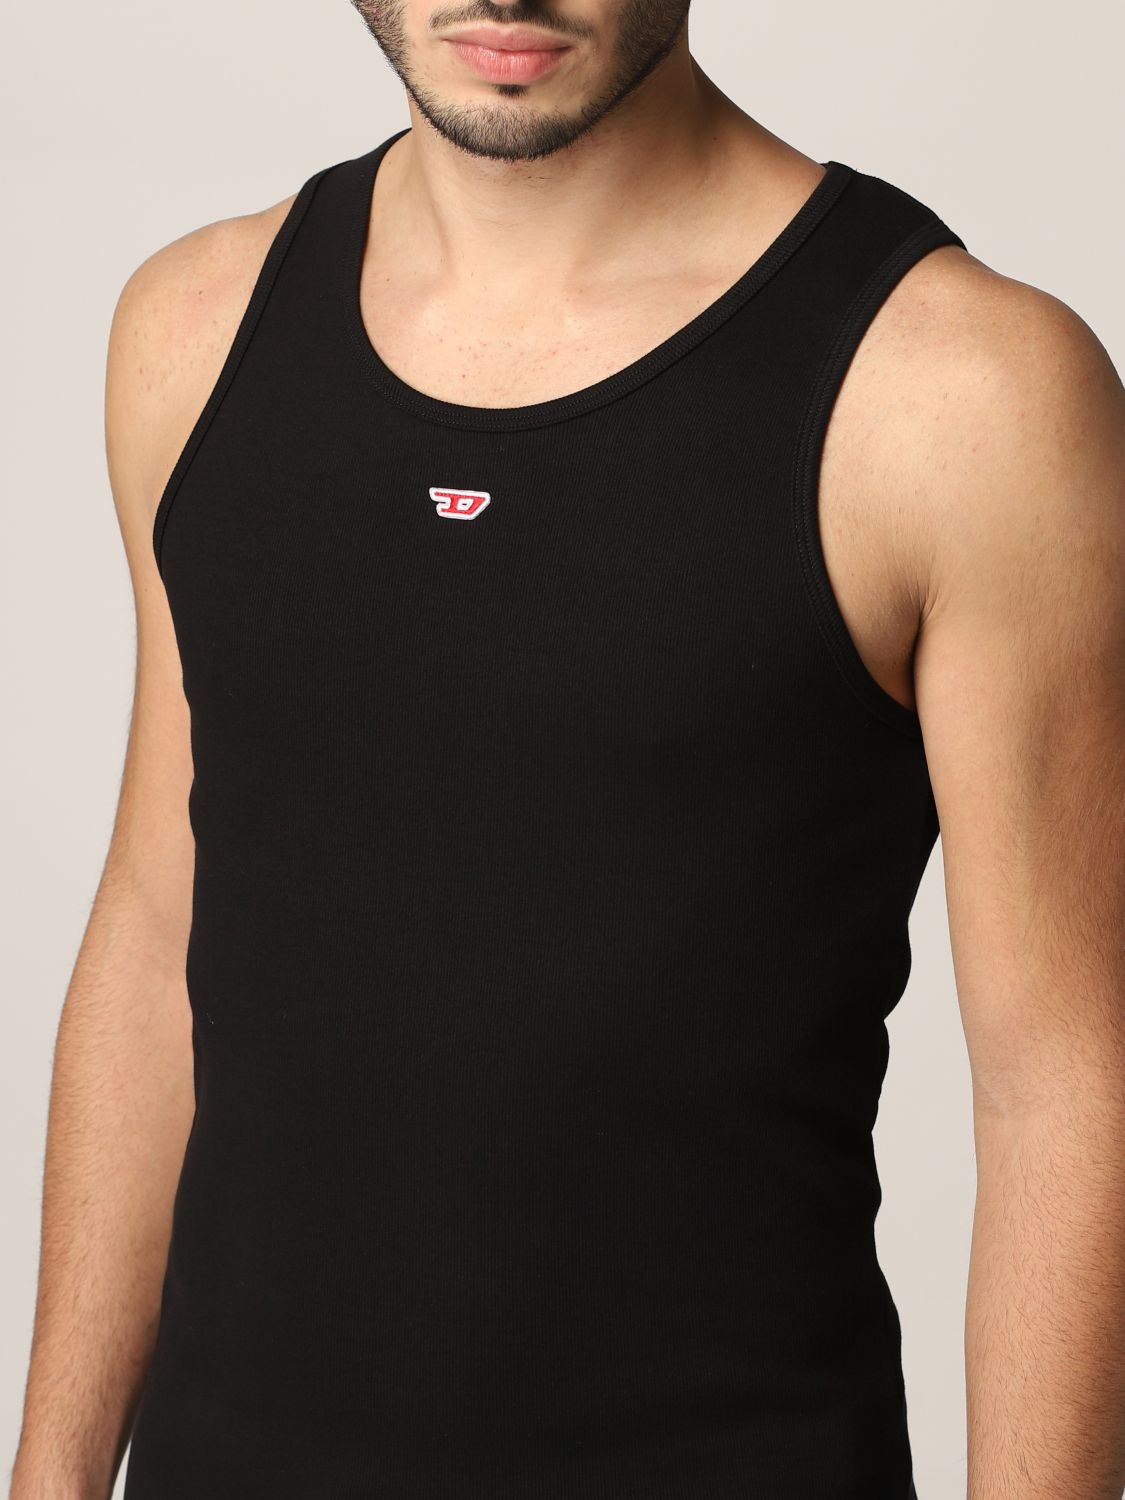 Uomo Abbigliamento da T-shirt da T-shirt senza maniche Canotta con logo DDIESEL in Cotone da Uomo colore Nero 